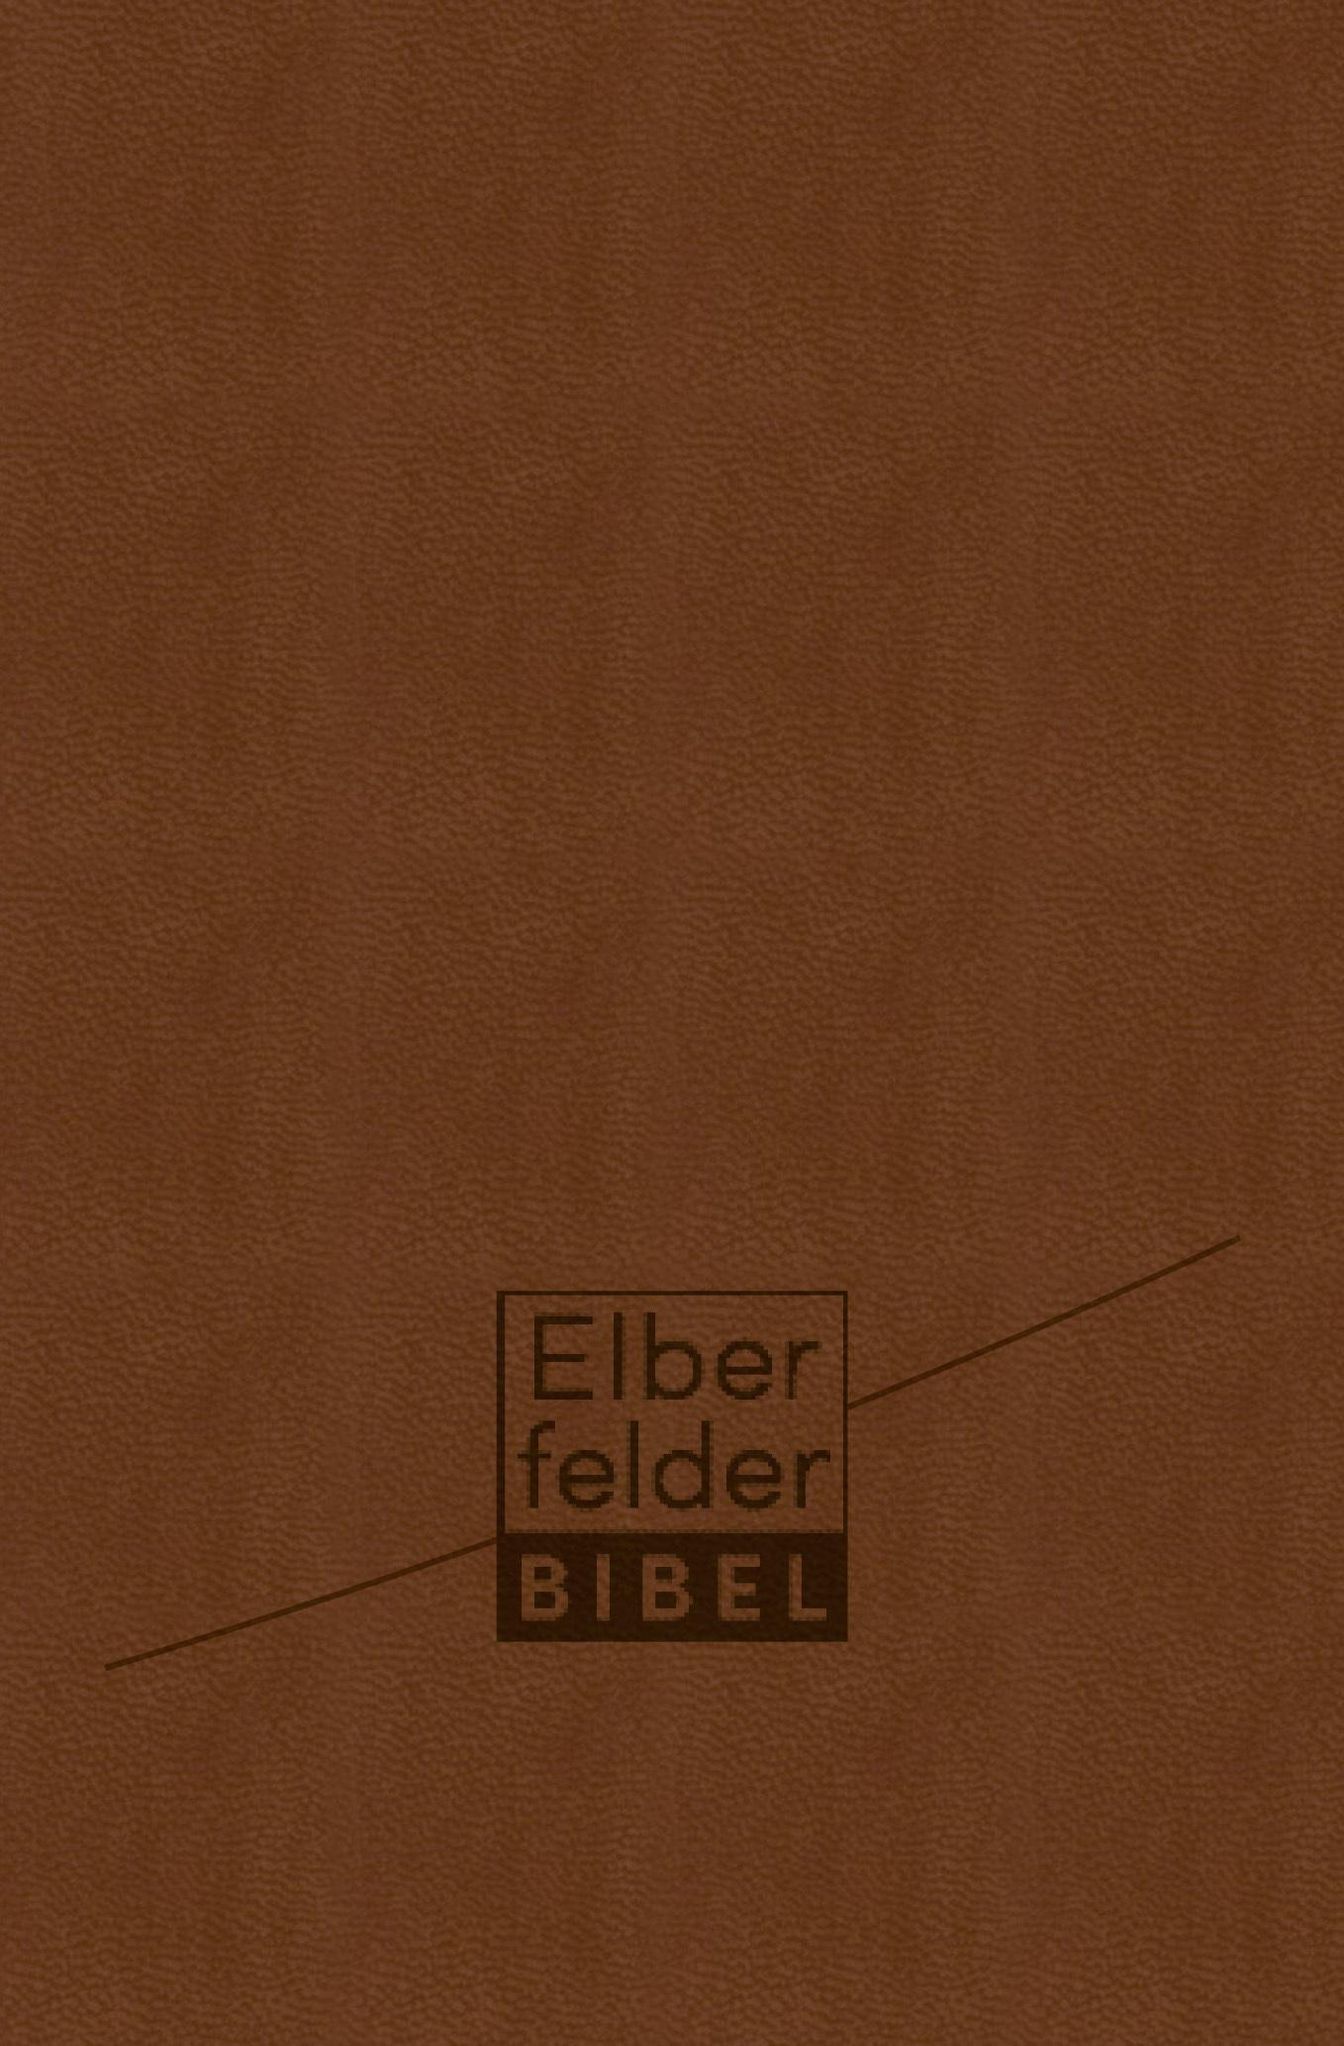 Elberfelder Bibel - Taschenausgabe, ital. Kunstleder mit Reißverschluss  Buch versandkostenfrei bei Weltbild.de bestellen